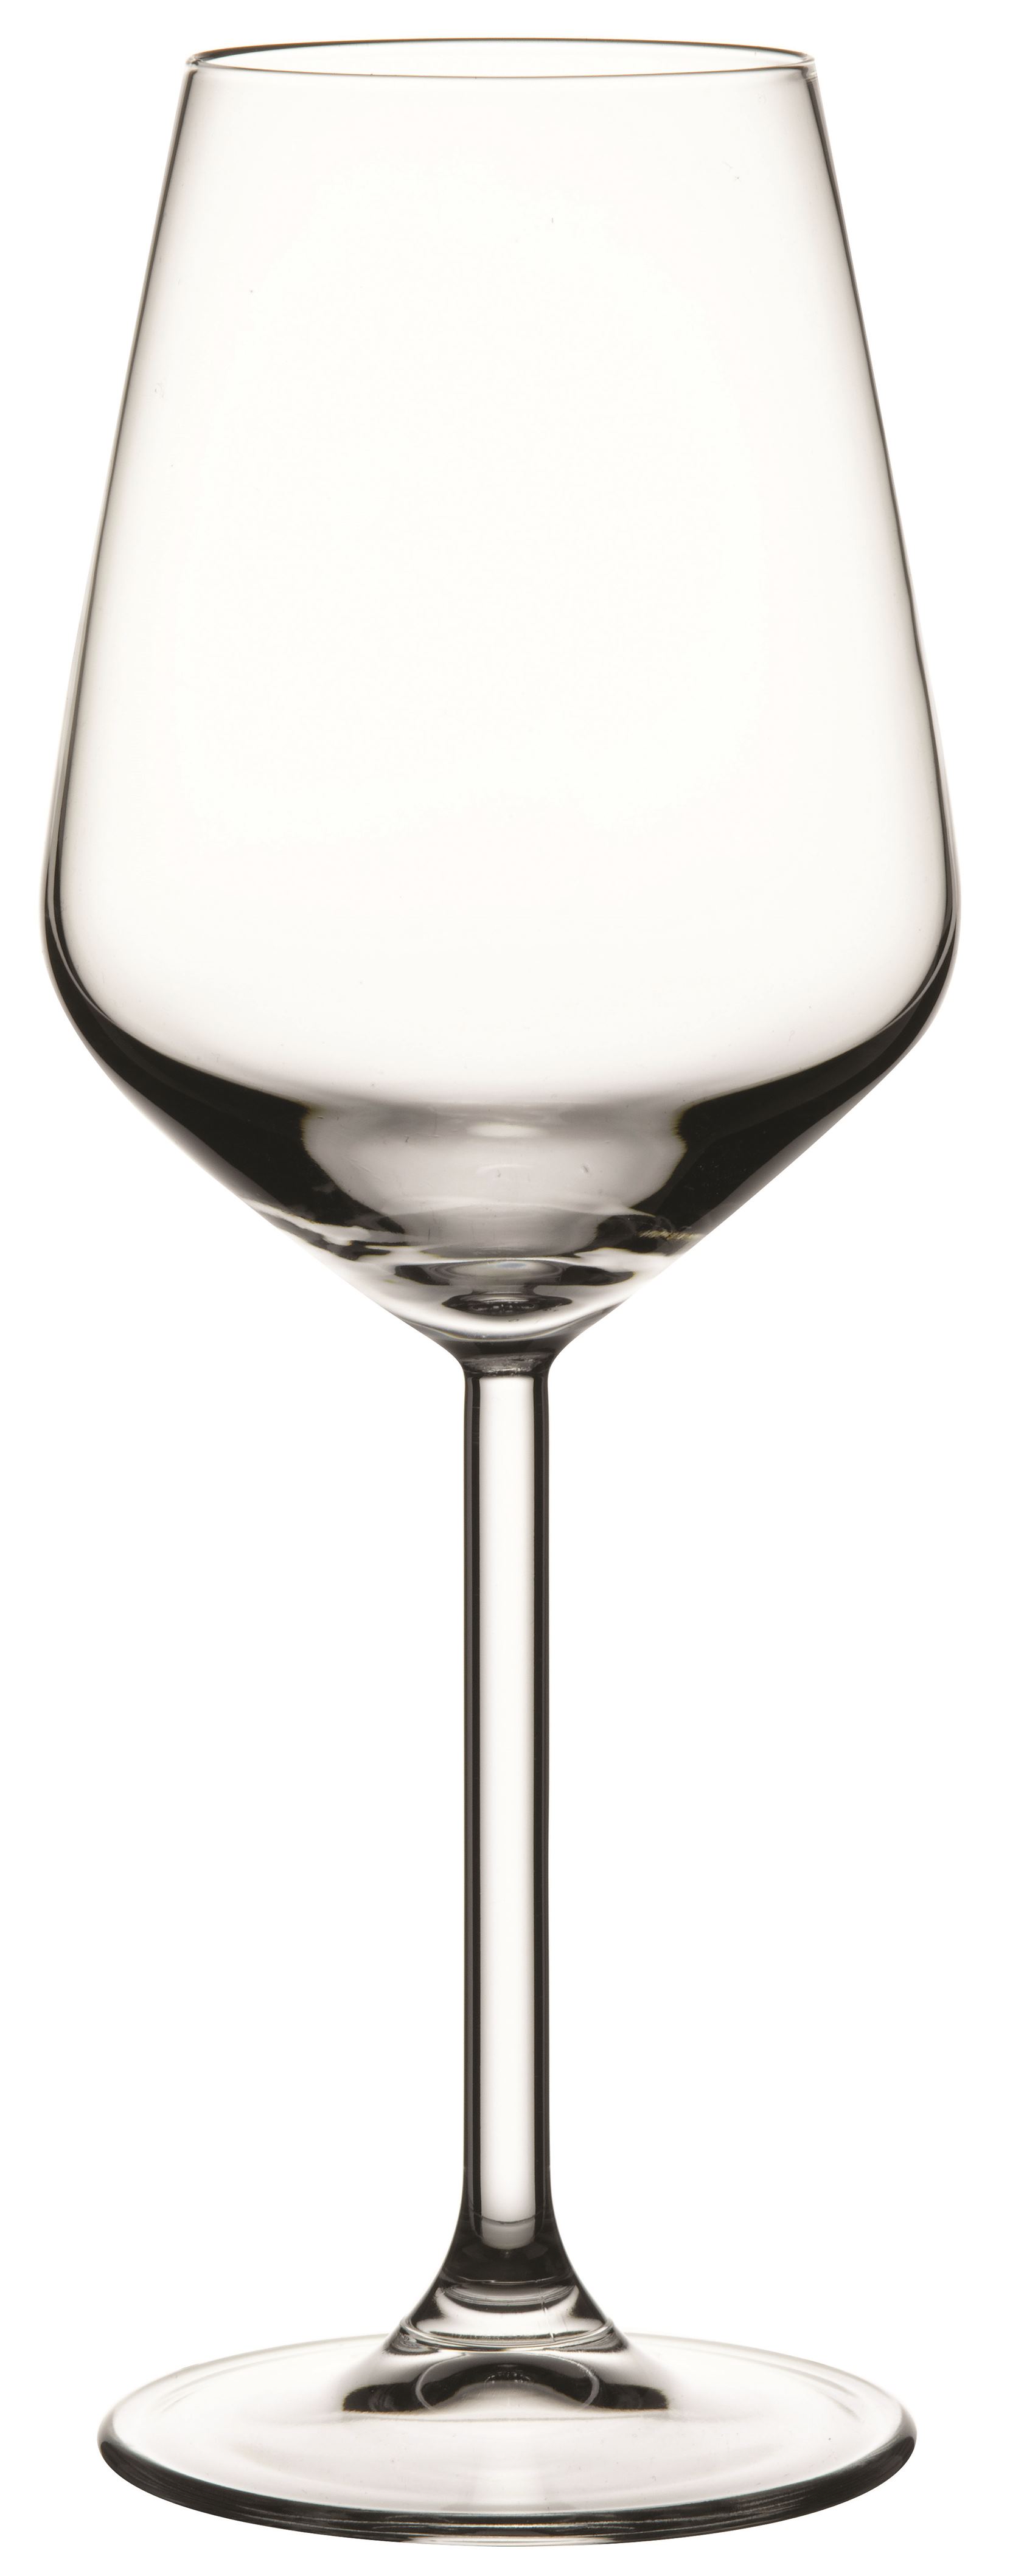 Weinglas Allegra, 0,35 ltr., Glas